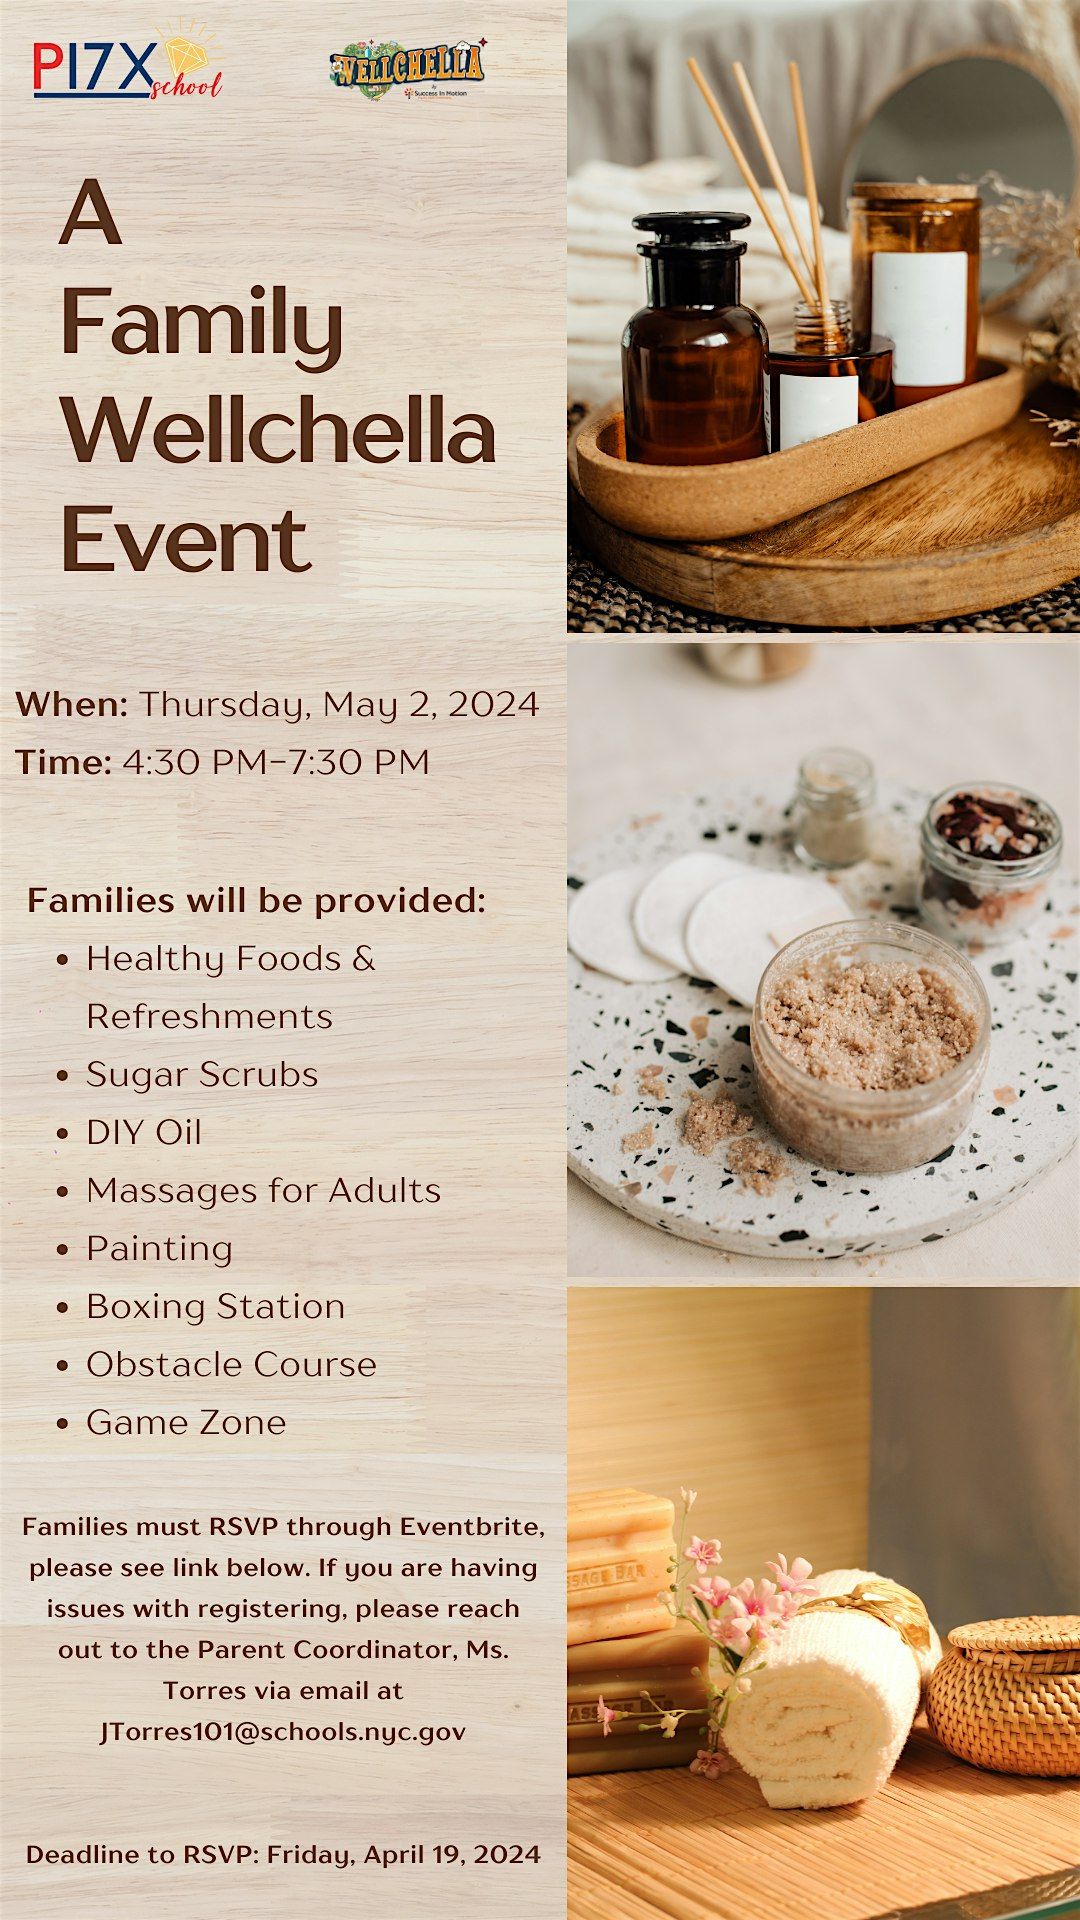 A Family Wellchella Event!